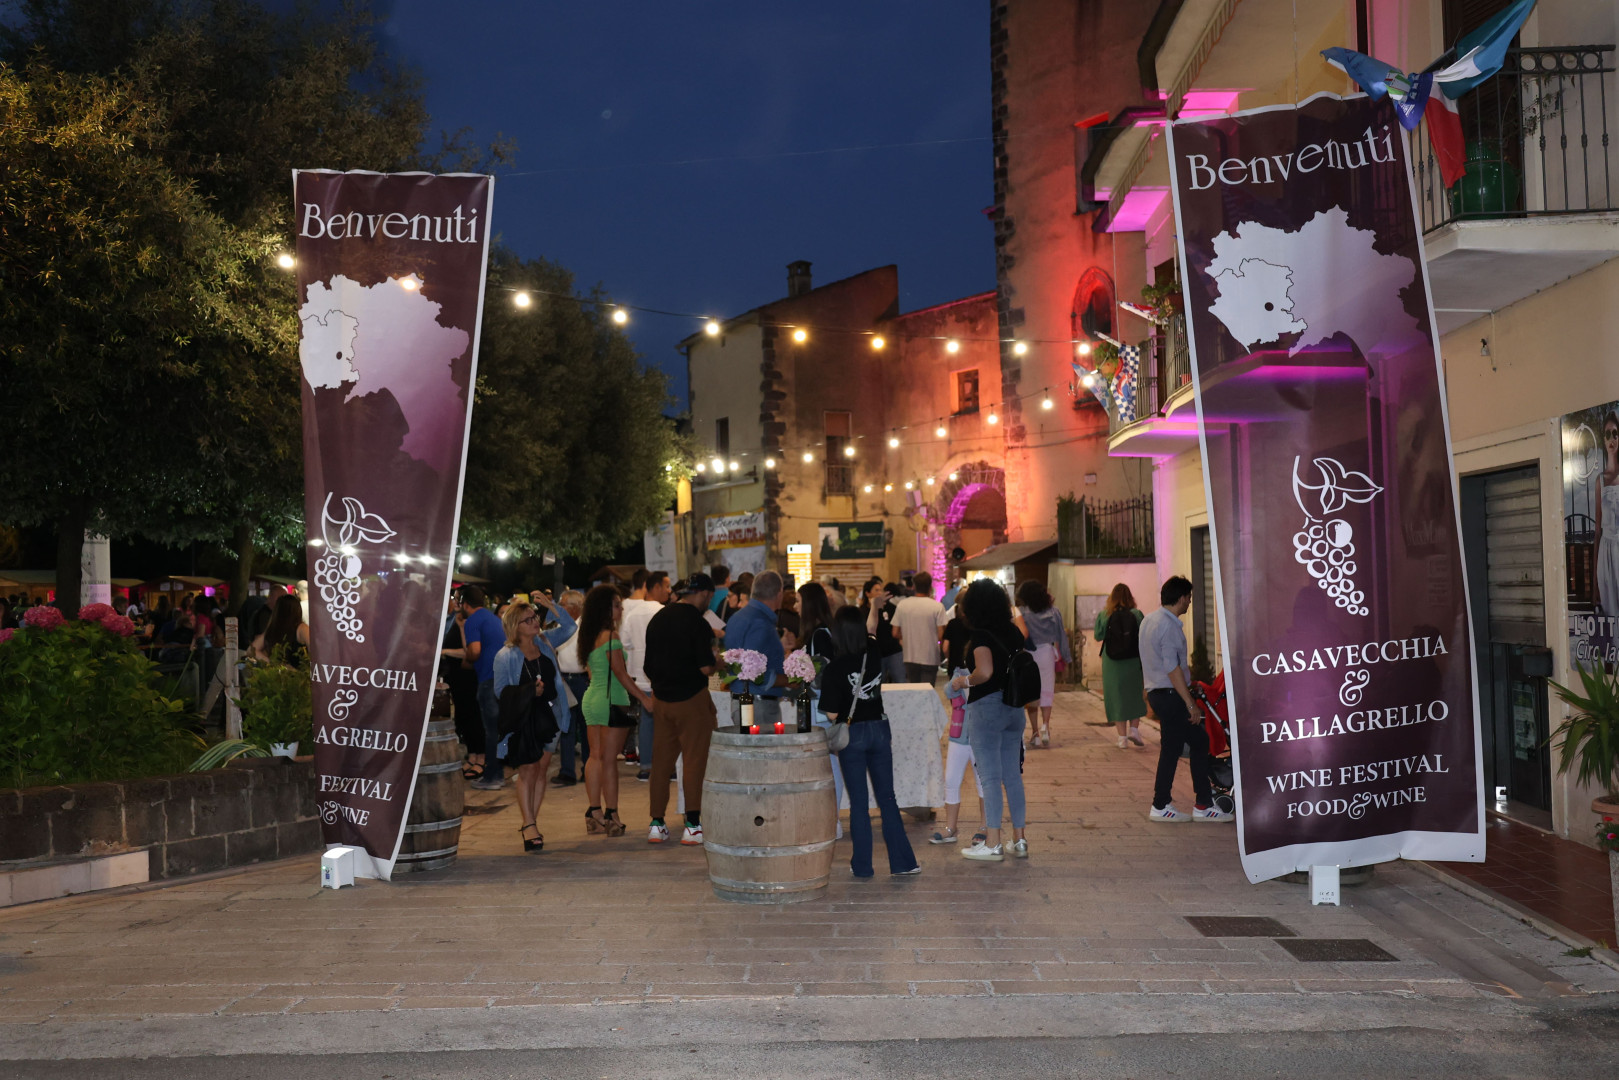 Casavecchia e Pallagrello Wine Festival: nuova edizione dell'evento dedicato a due grandi vitigni autoctoni casertani
